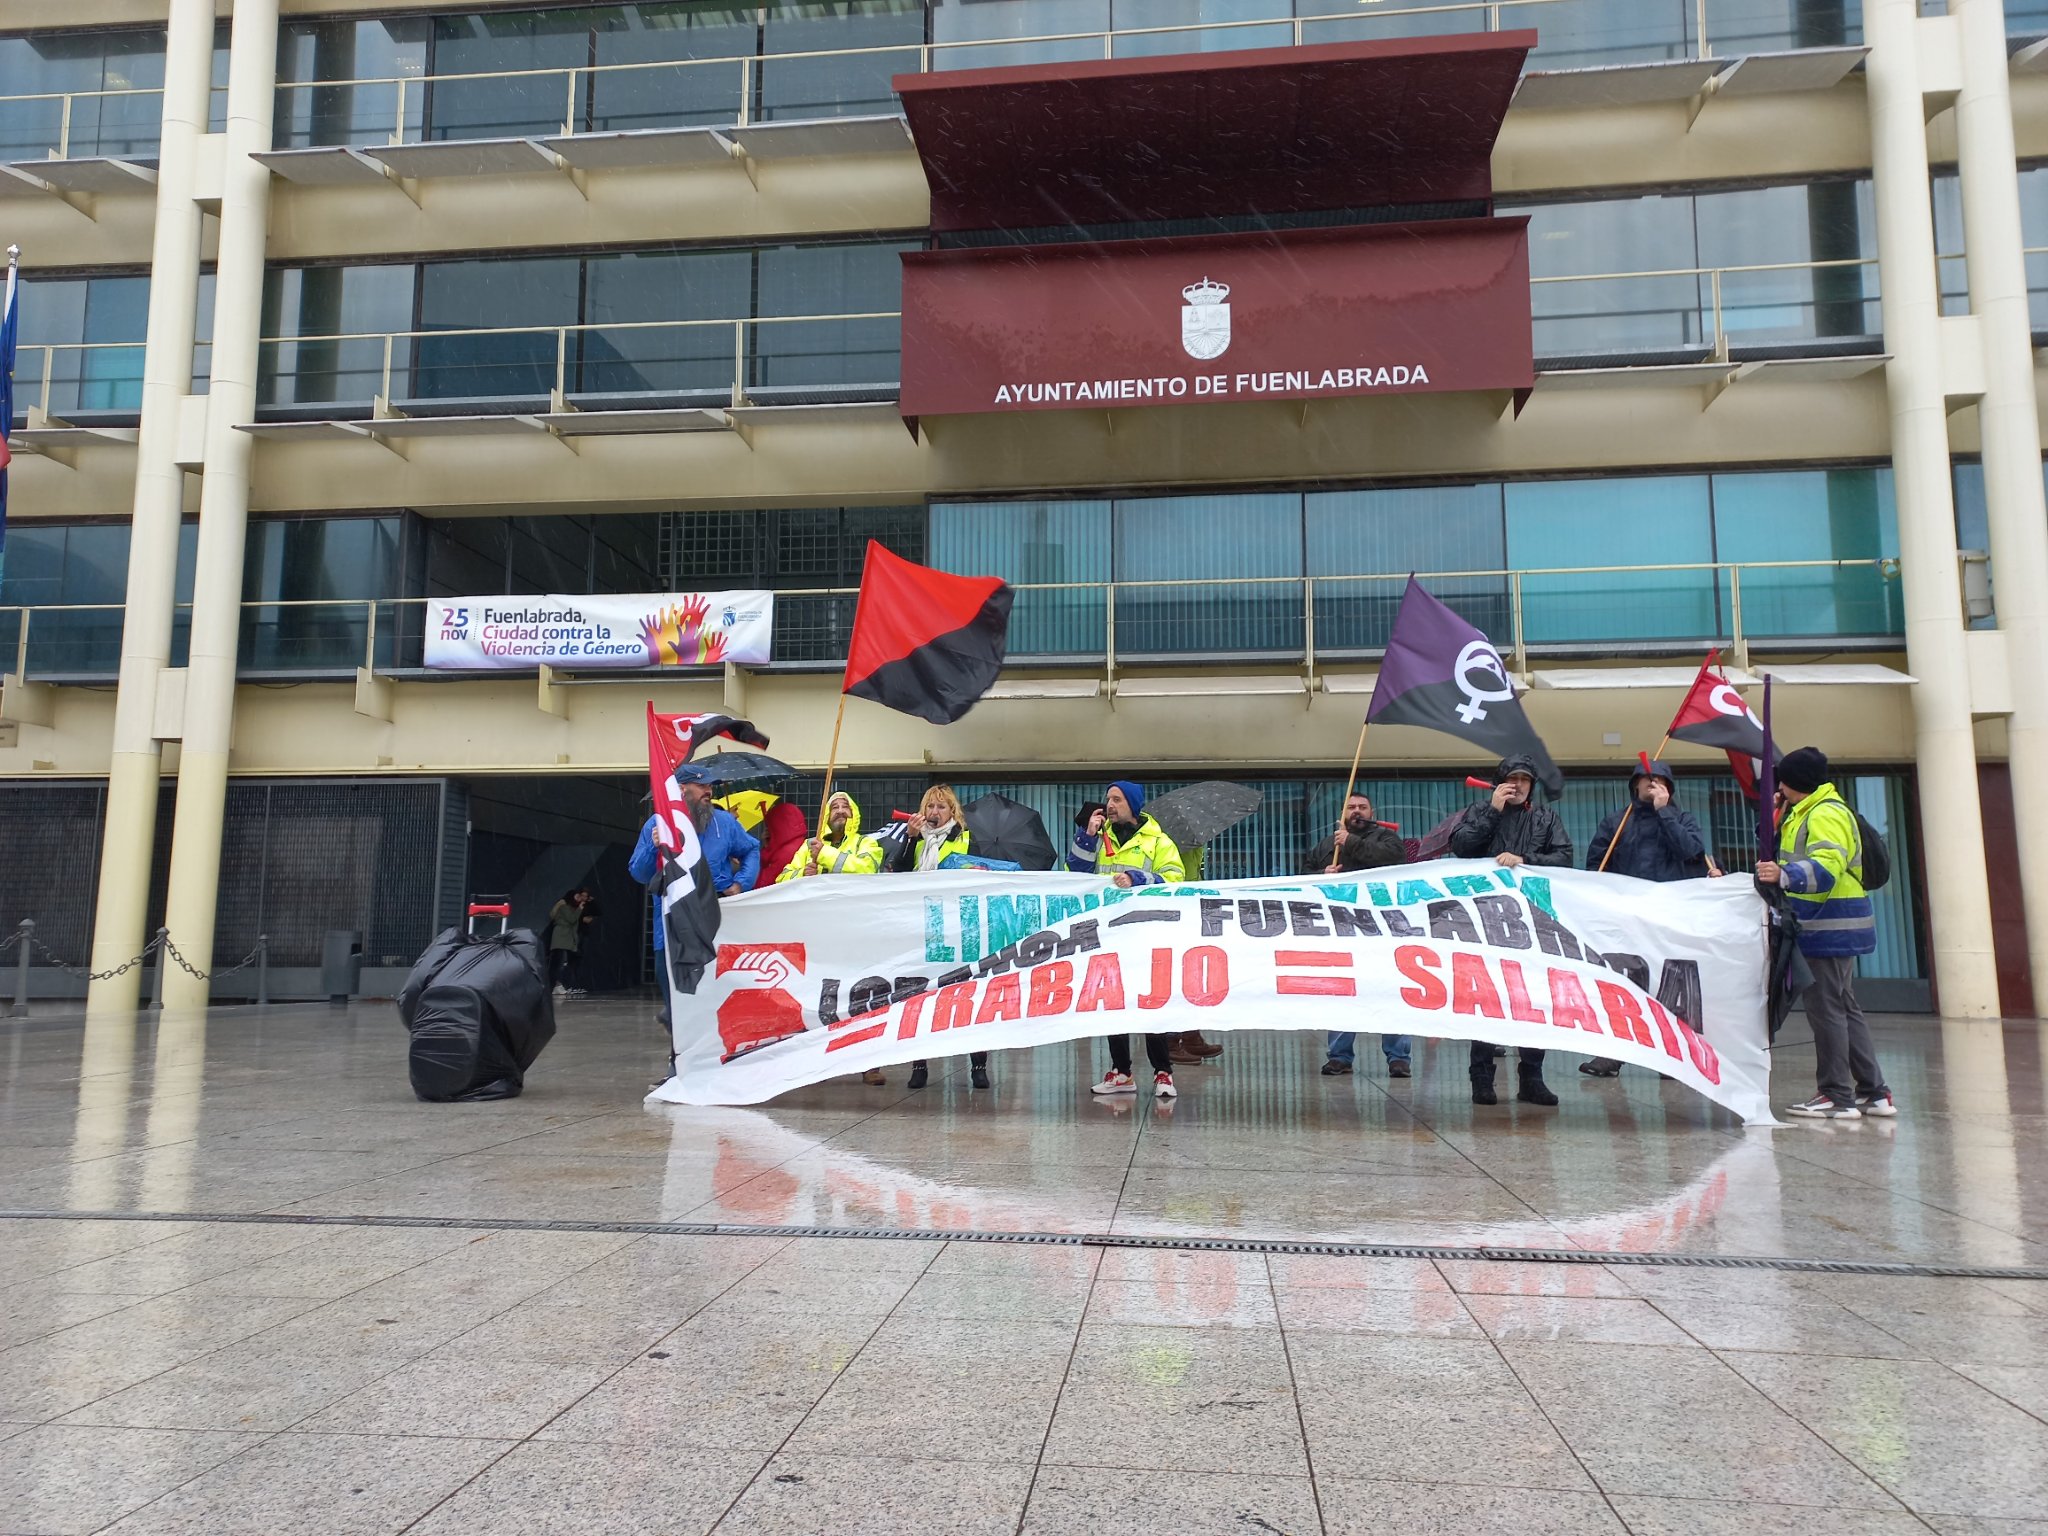 Los trabajadores de limpieza viaria de Loranca suspenden temporalmente su huelga tras un encuentro positivo con la empresa, manteniendo la esperanza de conseguir aumentos salariales y condiciones laborales mejoradas.